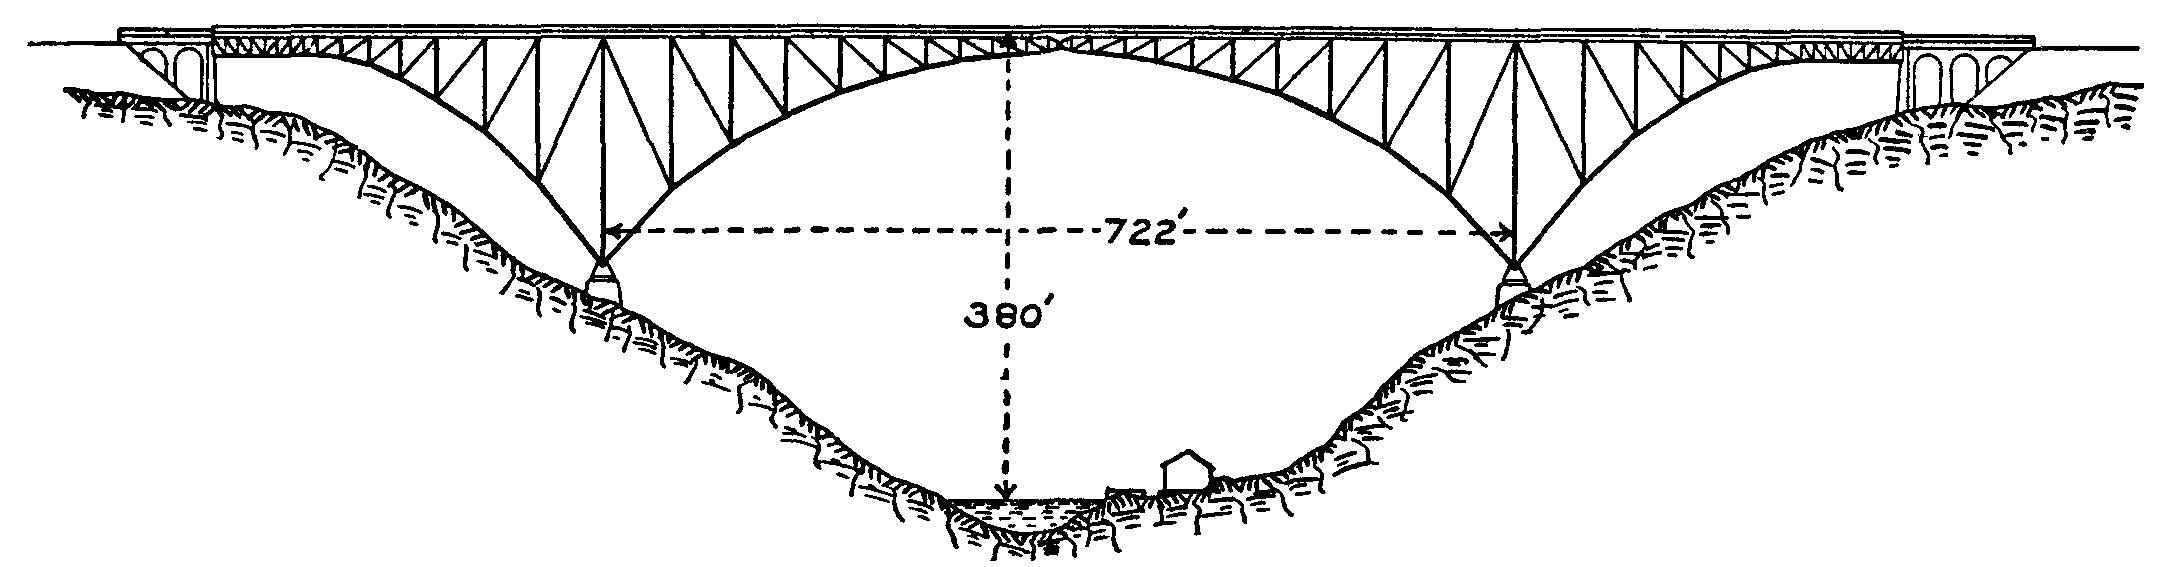 Fig. 30.--Viaur Viaduct.